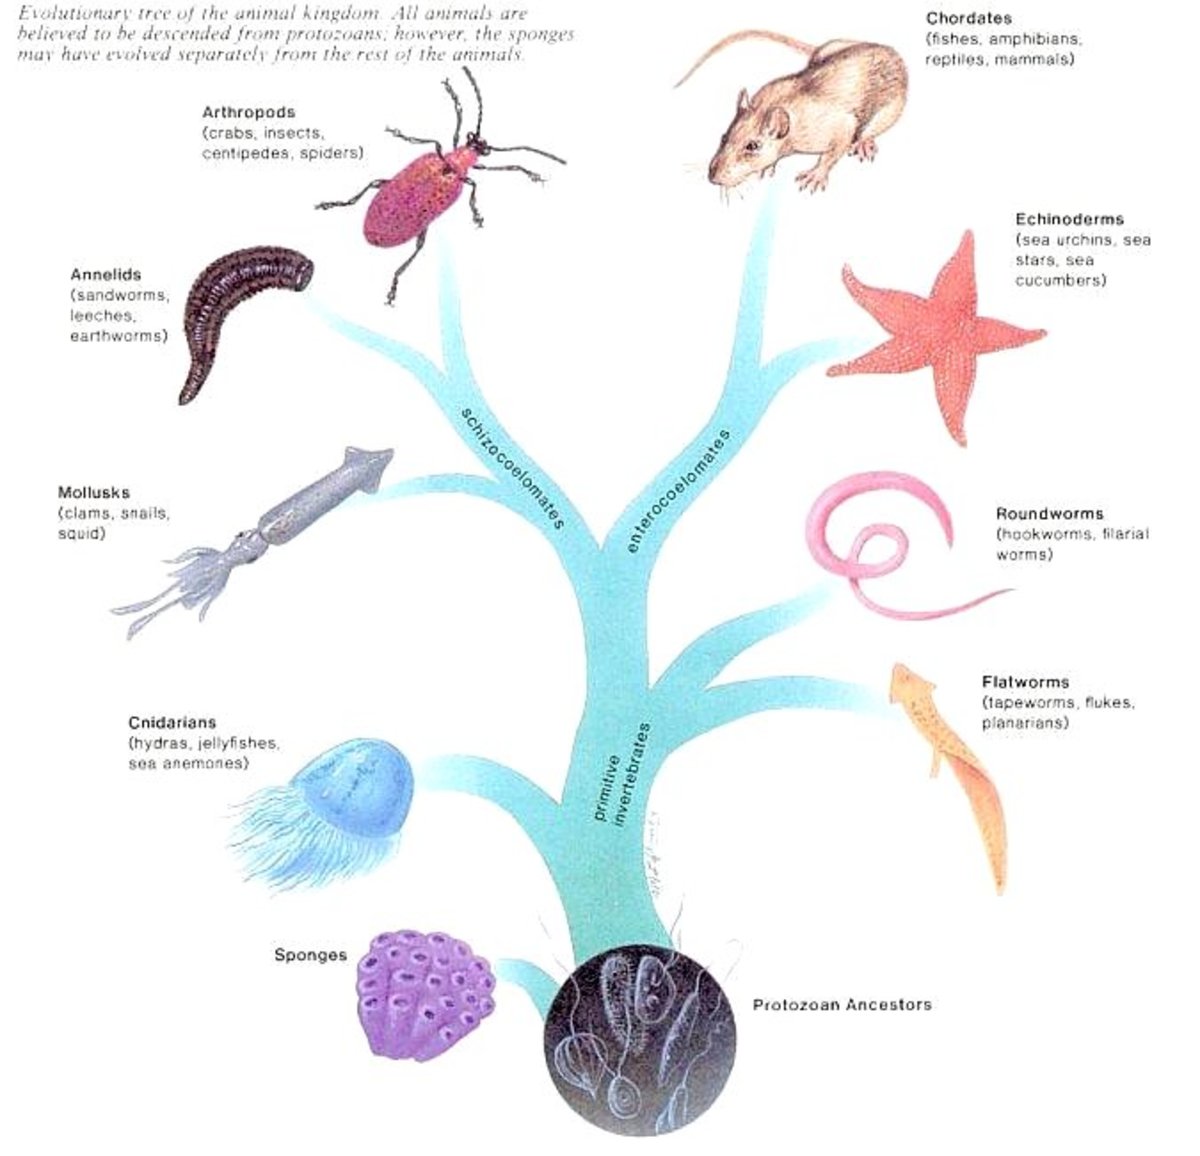 The animal family tree